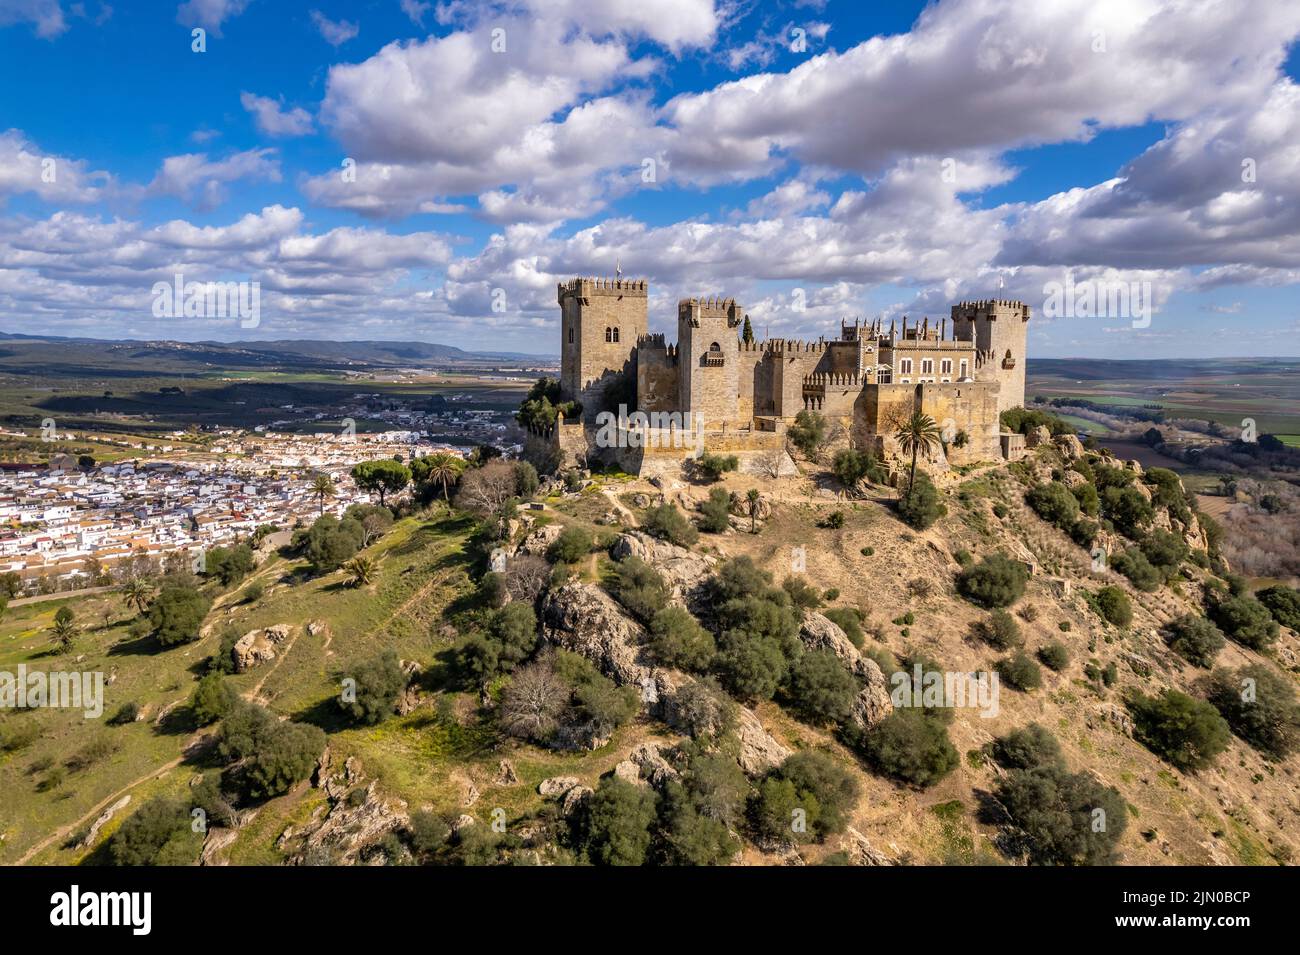 Die Burg Castillo de Almodóvar del Río und das Dorf Almodóvar del Río, Andalusien, Espagnol | Castillo de Almodóvar del Río château et le village de Banque D'Images